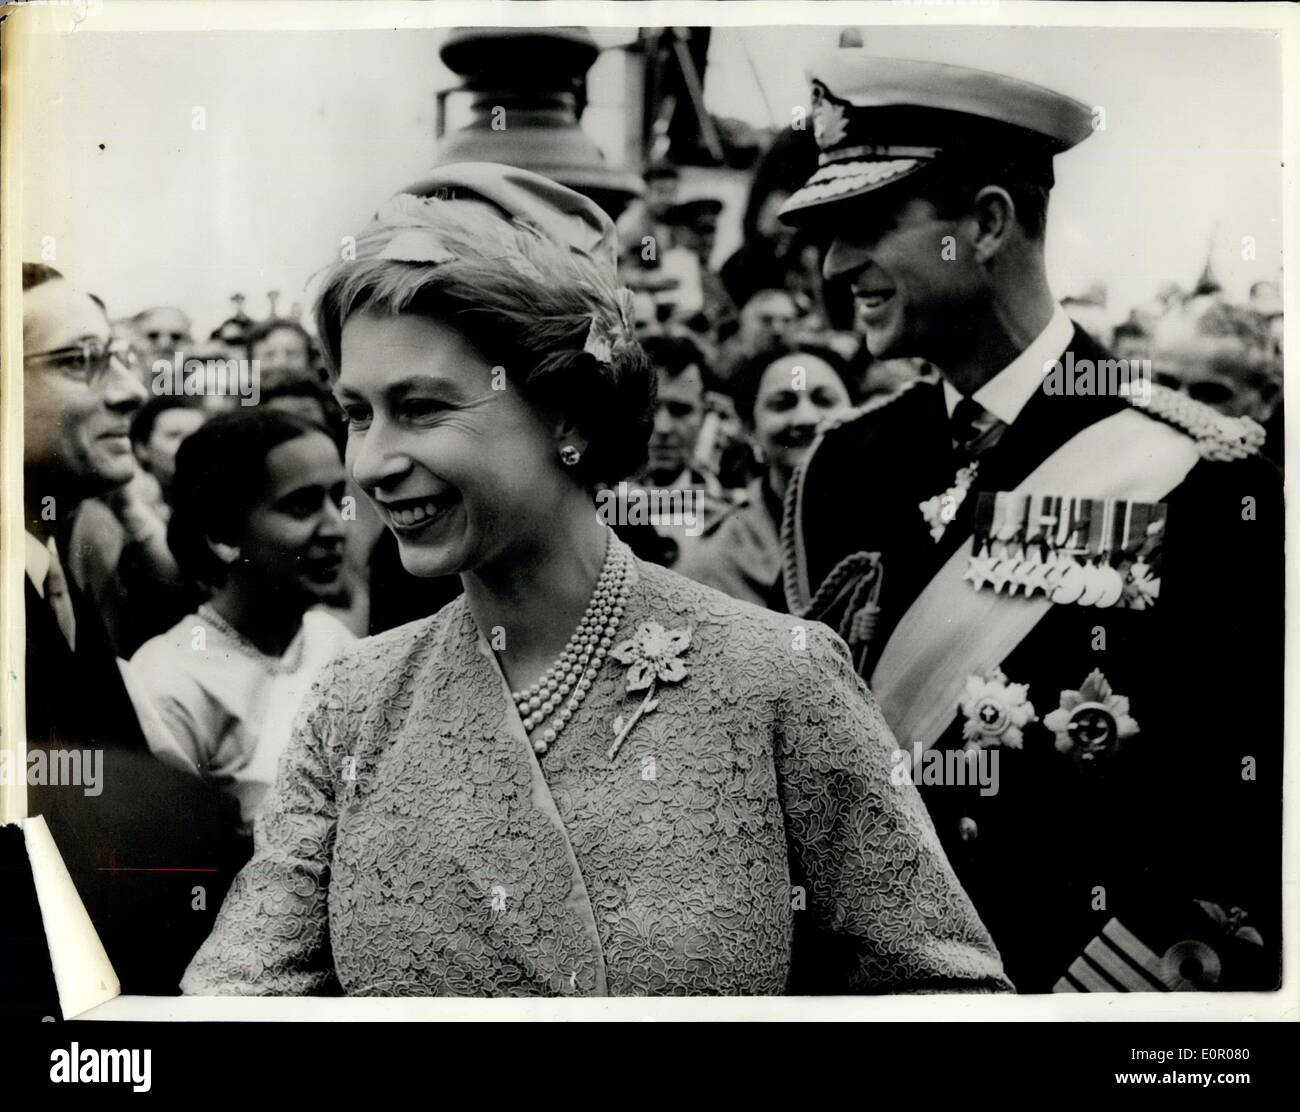 22. Mai 1957 - Staat besuchen, Dänemark: H.M, die Königin und der Herzog von Edinburgh in Kopenhagen gestern für den Staatsbesuch in Dänemark ankamen. Foto zeigt ein glückliches Bild von HM The Queen und Prinz Philip, als sie gestern in Kopenhagen angekommen. Stockfoto